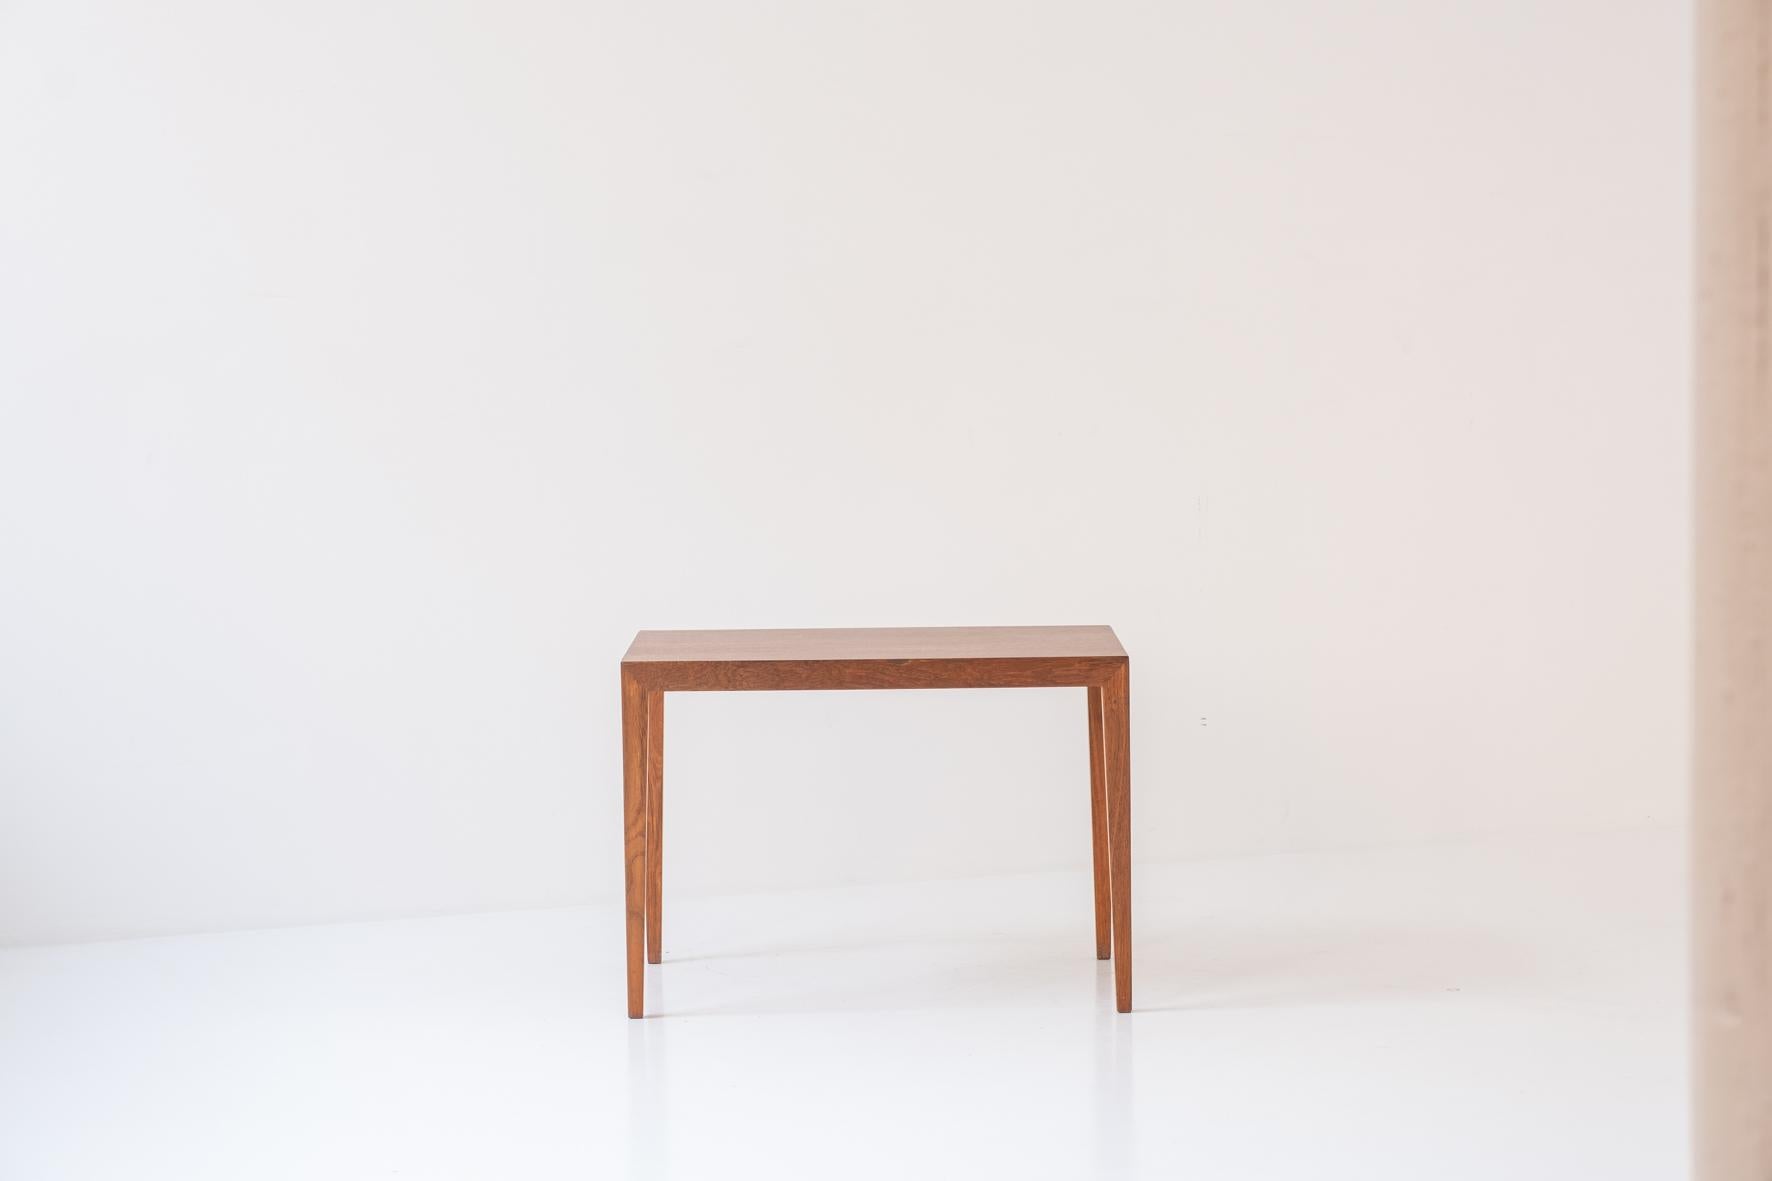 Danish Elegant side table by Severin Hansen for Haslev Møbelfabrik, Denmark 1950’s.